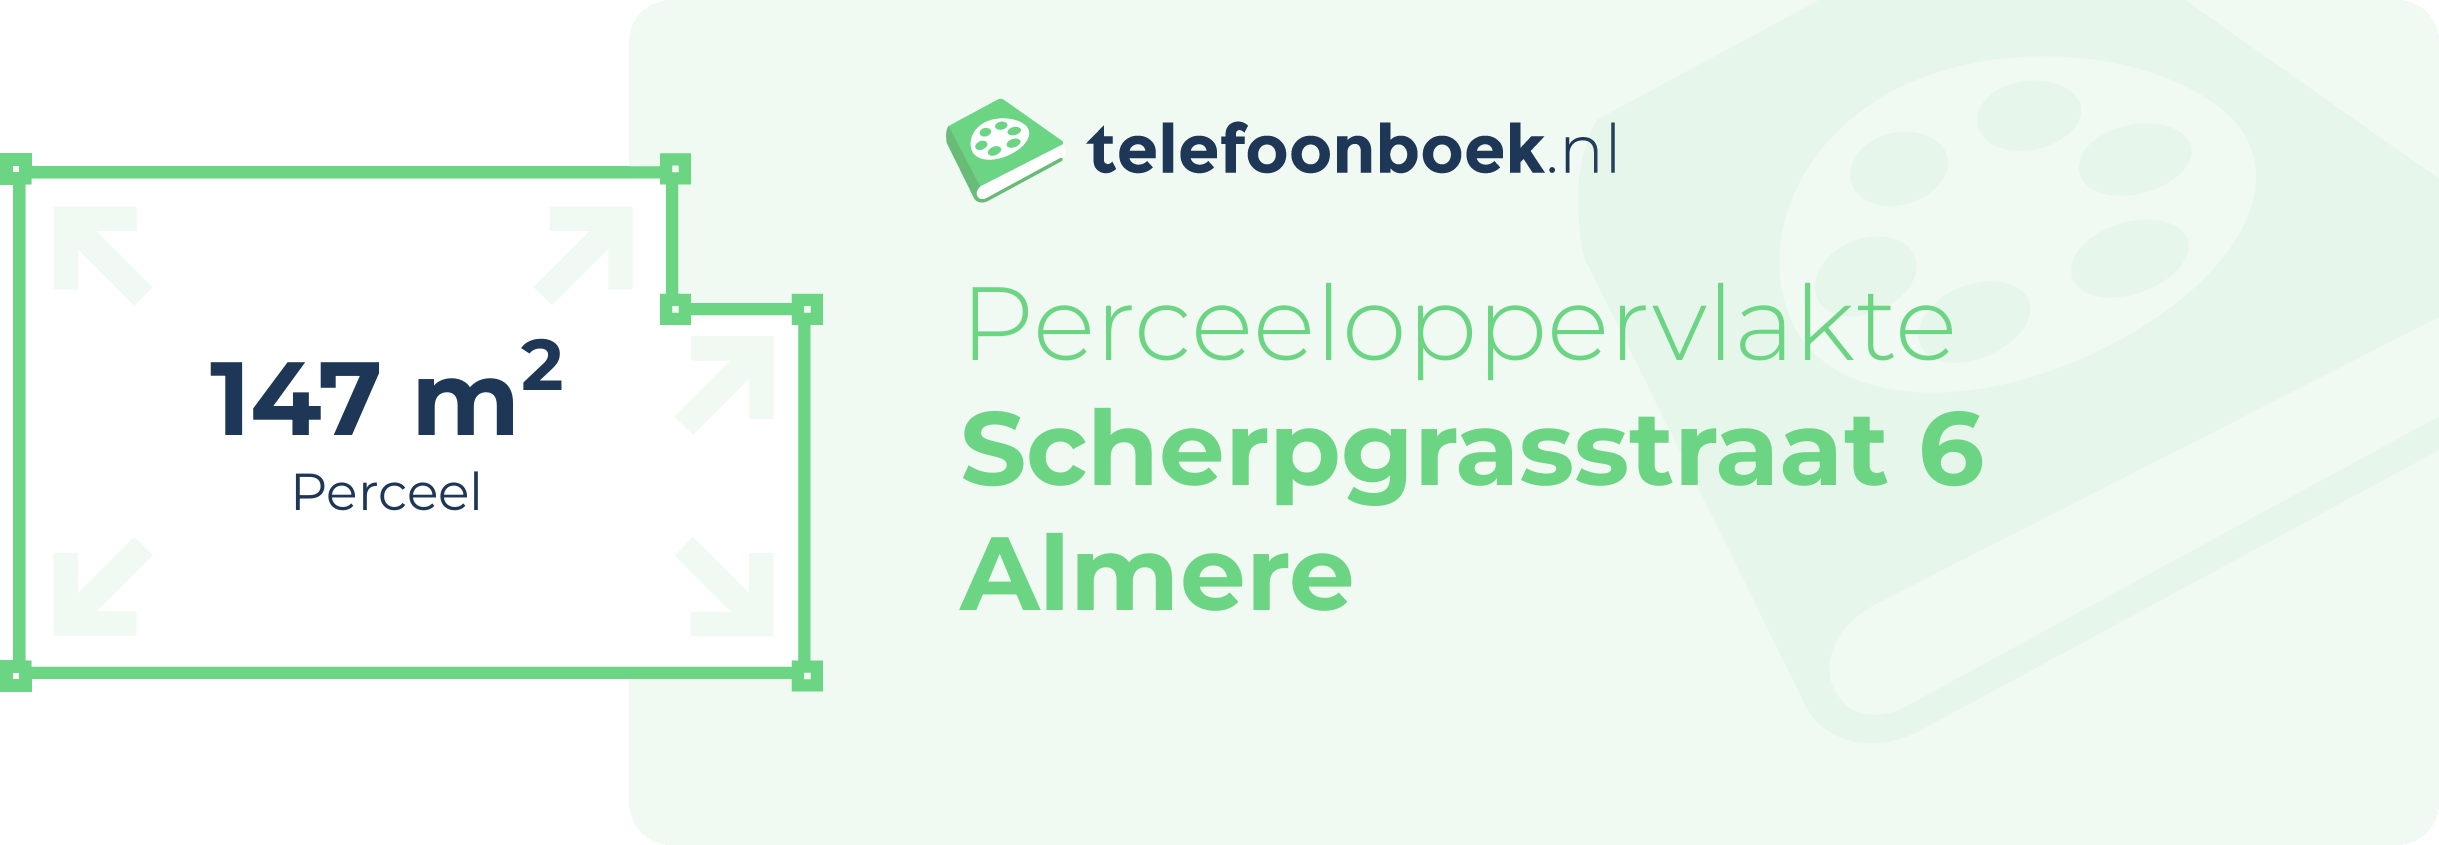 Perceeloppervlakte Scherpgrasstraat 6 Almere